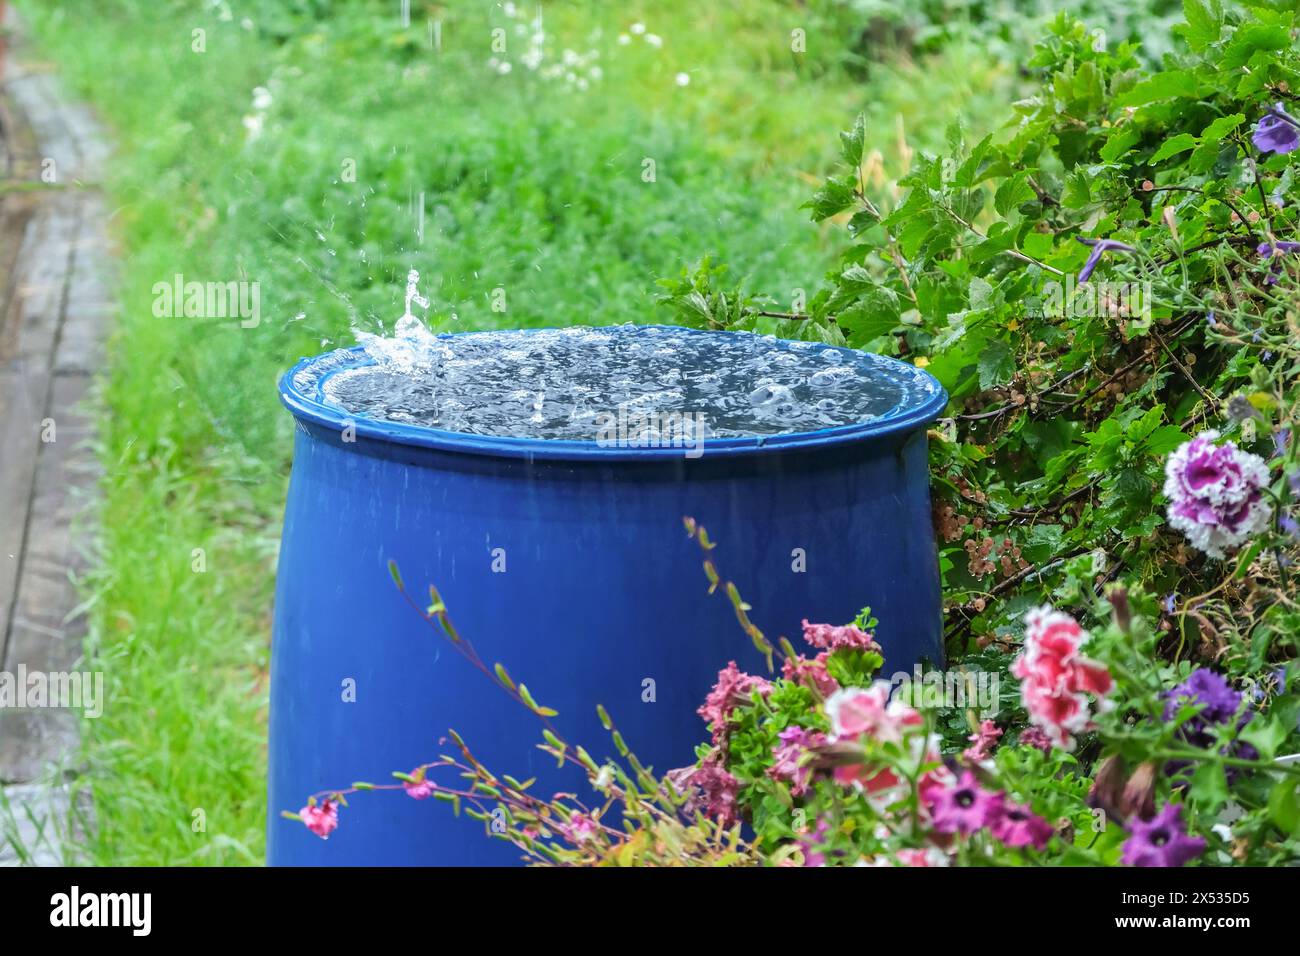 Un tonneau bleu pour recueillir l'eau de pluie. Collecte de l'eau de pluie dans un récipient en plastique. Collecte de l'eau de pluie pour arroser le jardin. Collecti écologique Banque D'Images